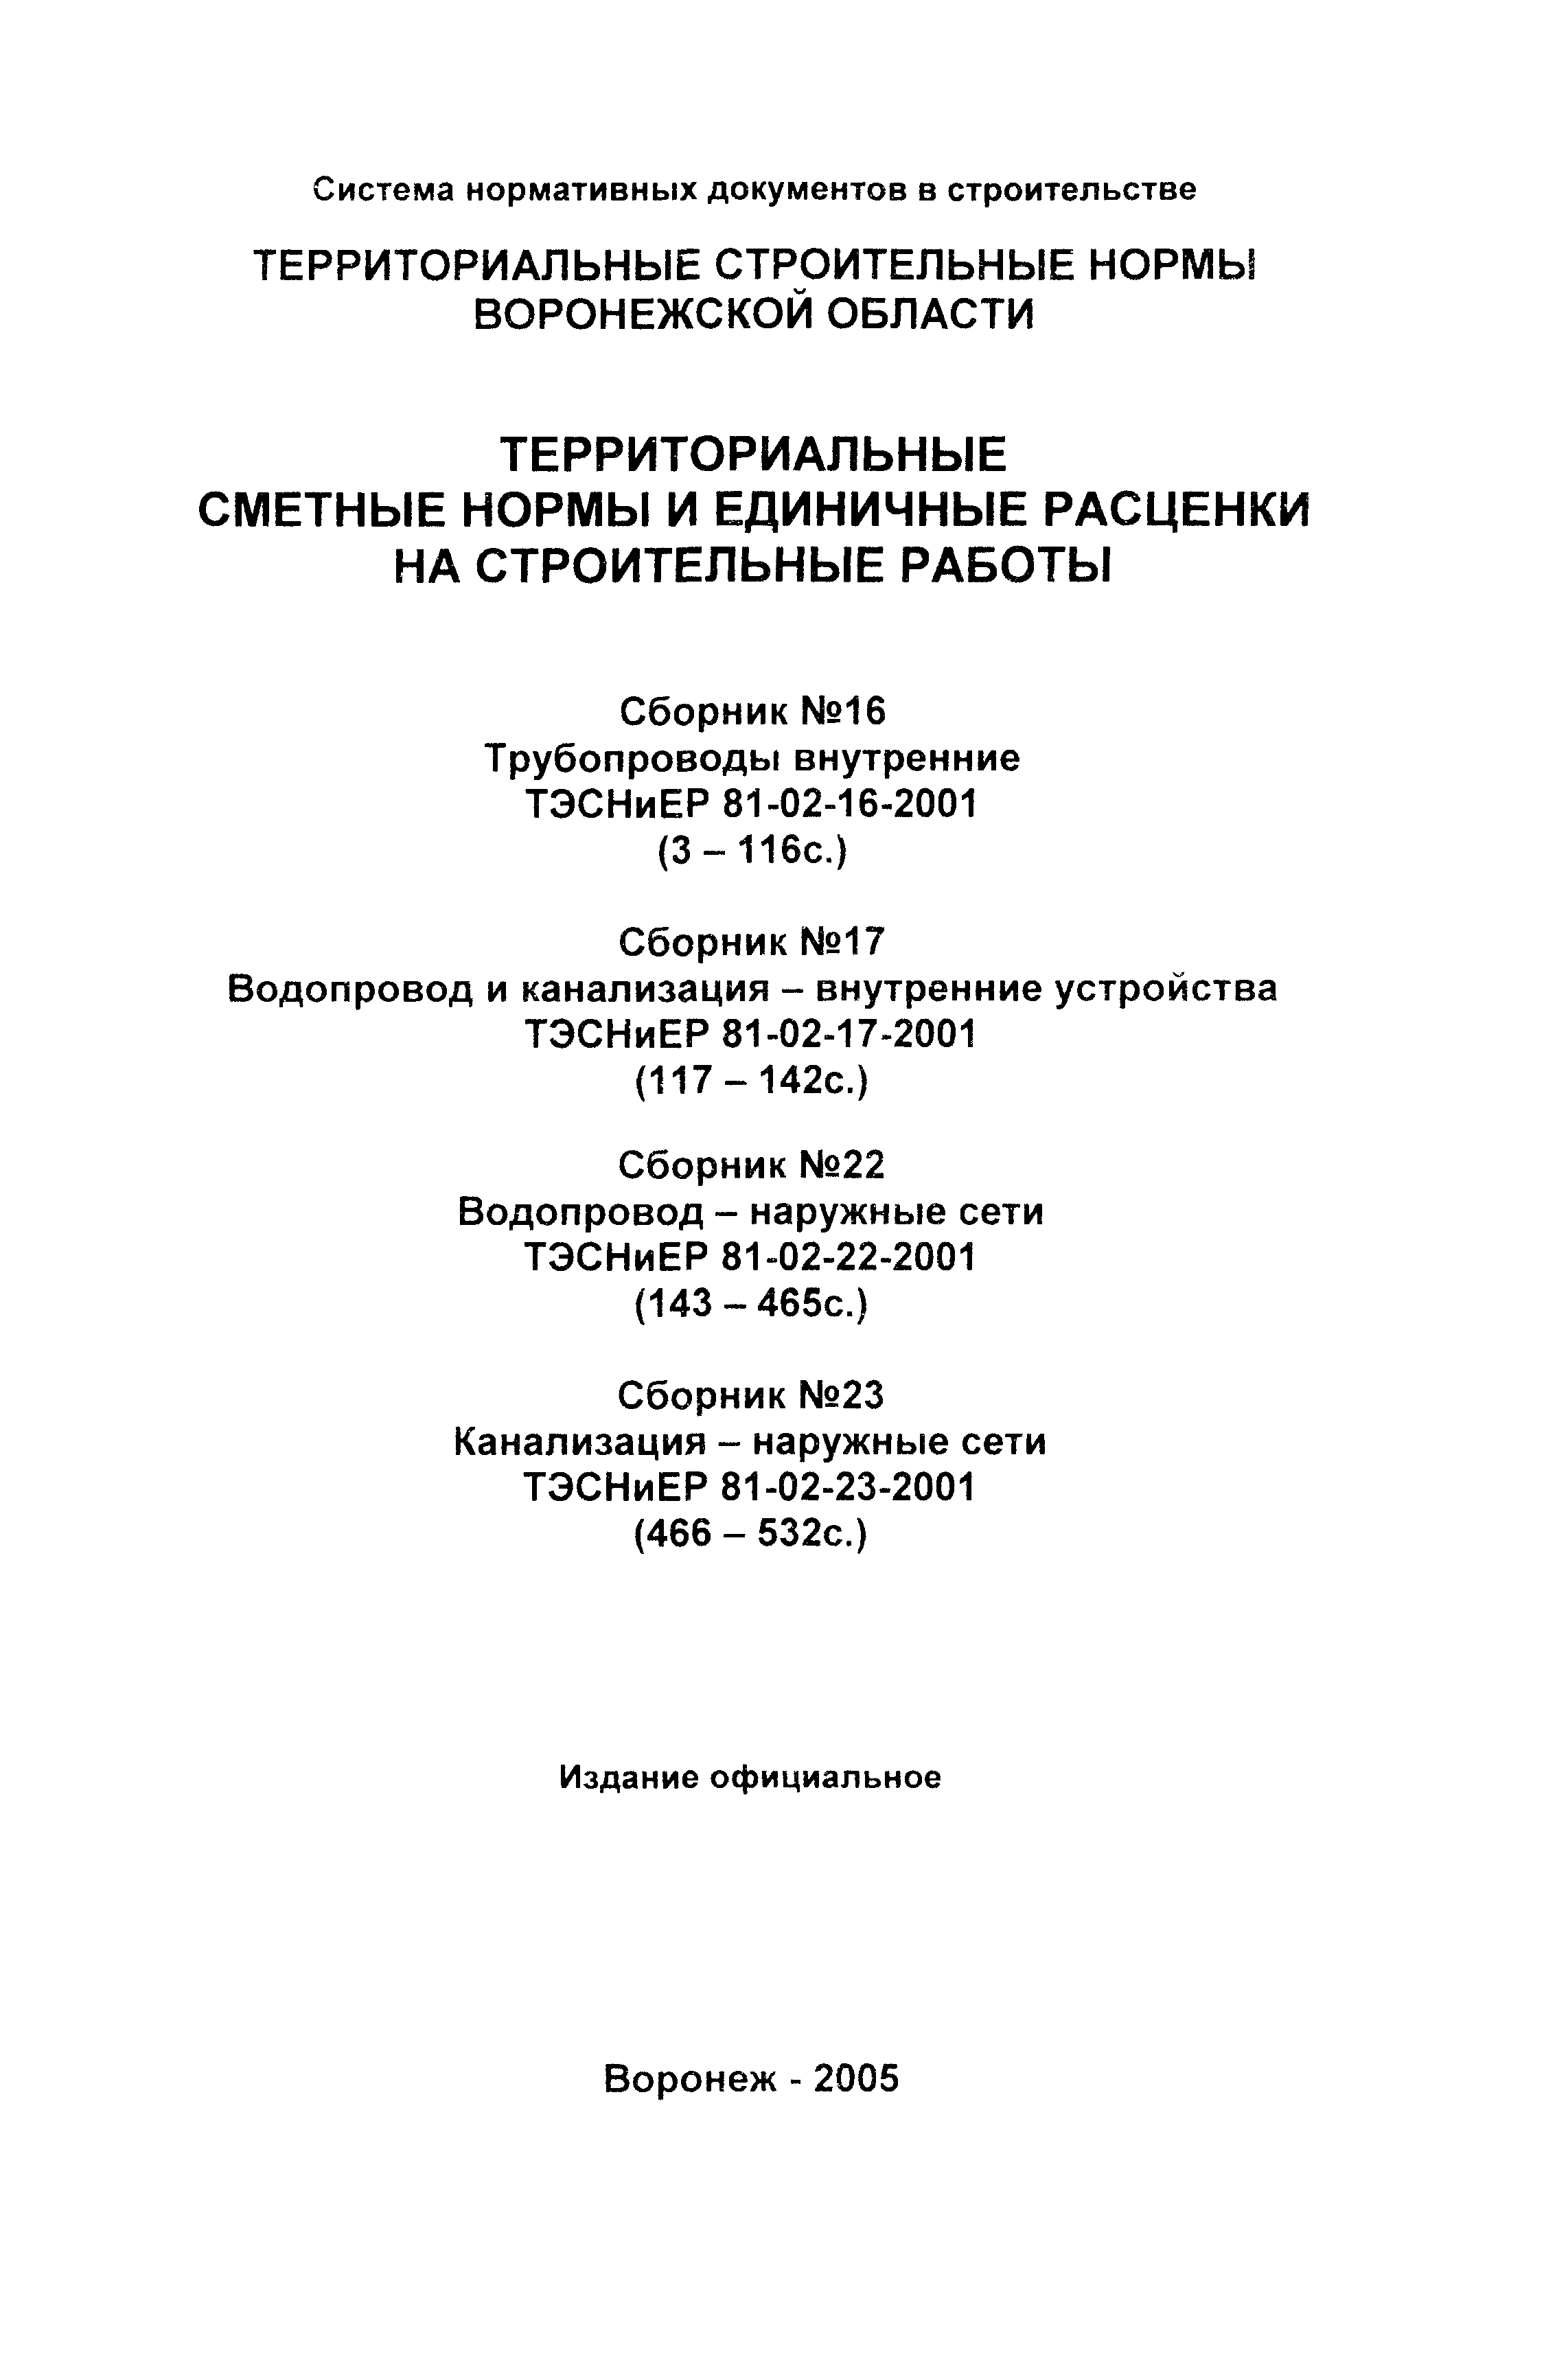 ТЭСНиЕР Воронежской области 81-02-17-2001